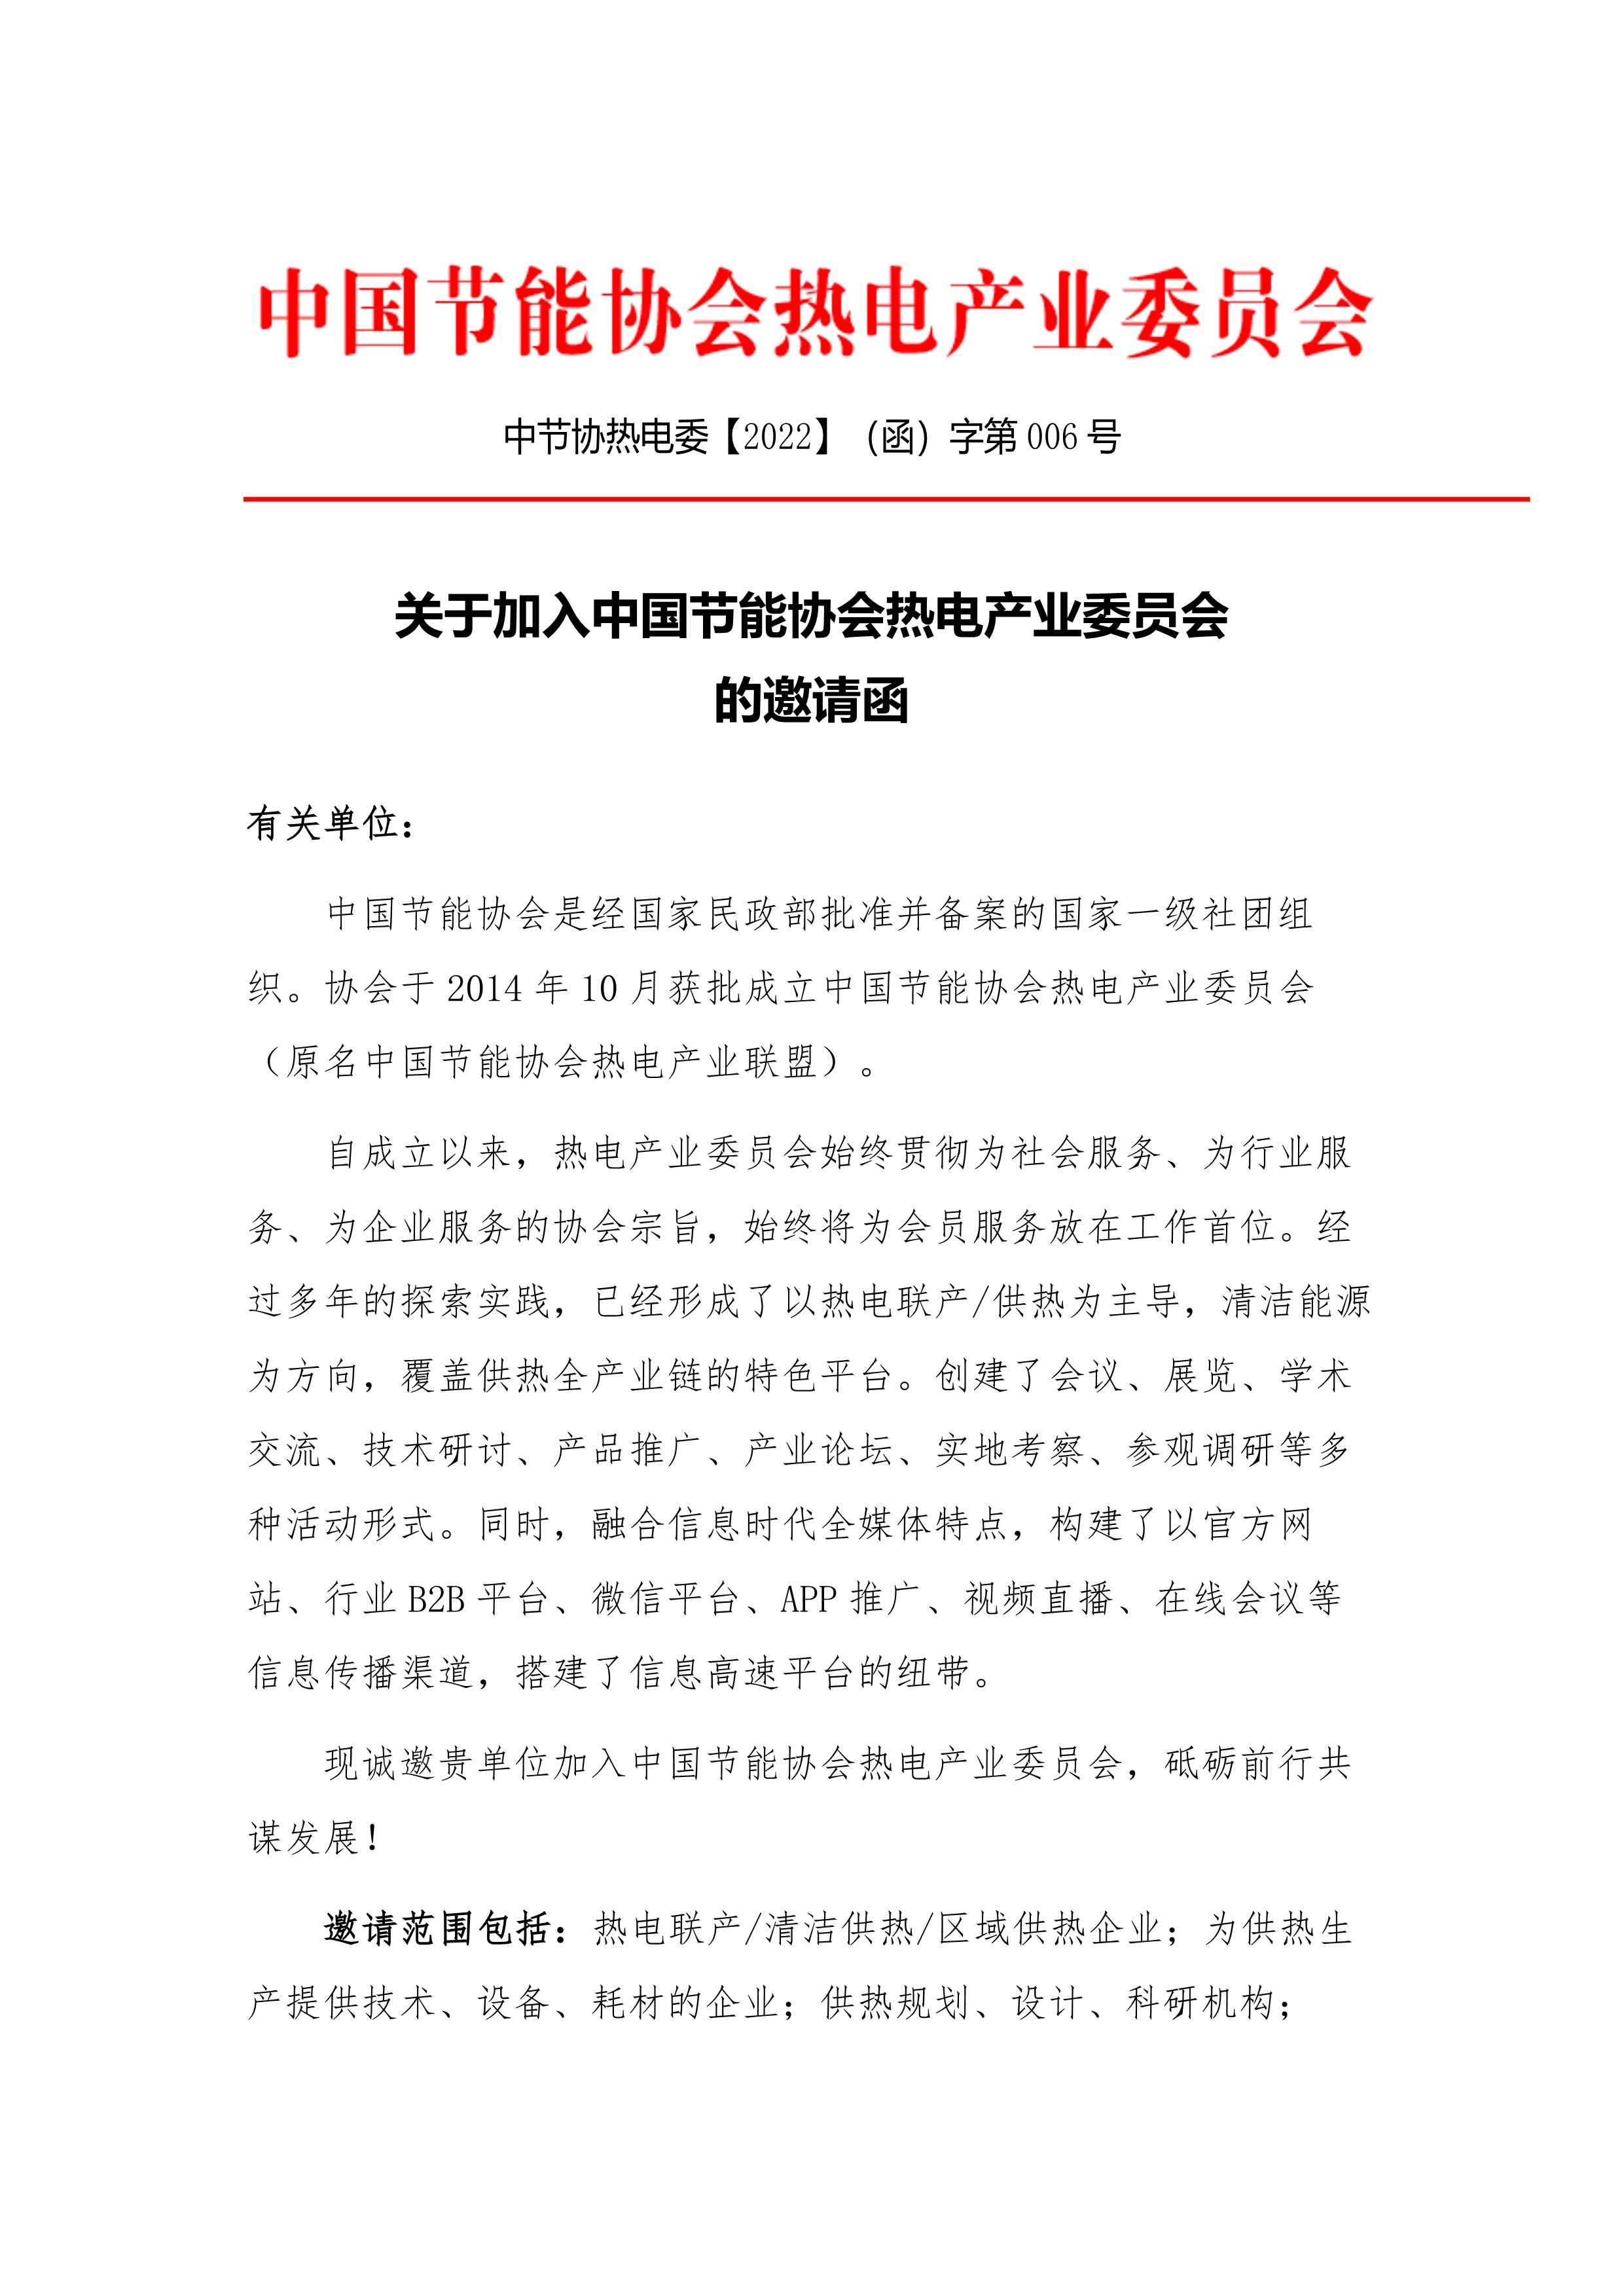 关于邀请加入中国节能协会热电产业委员会的函(2021.05.18)_1.jpg